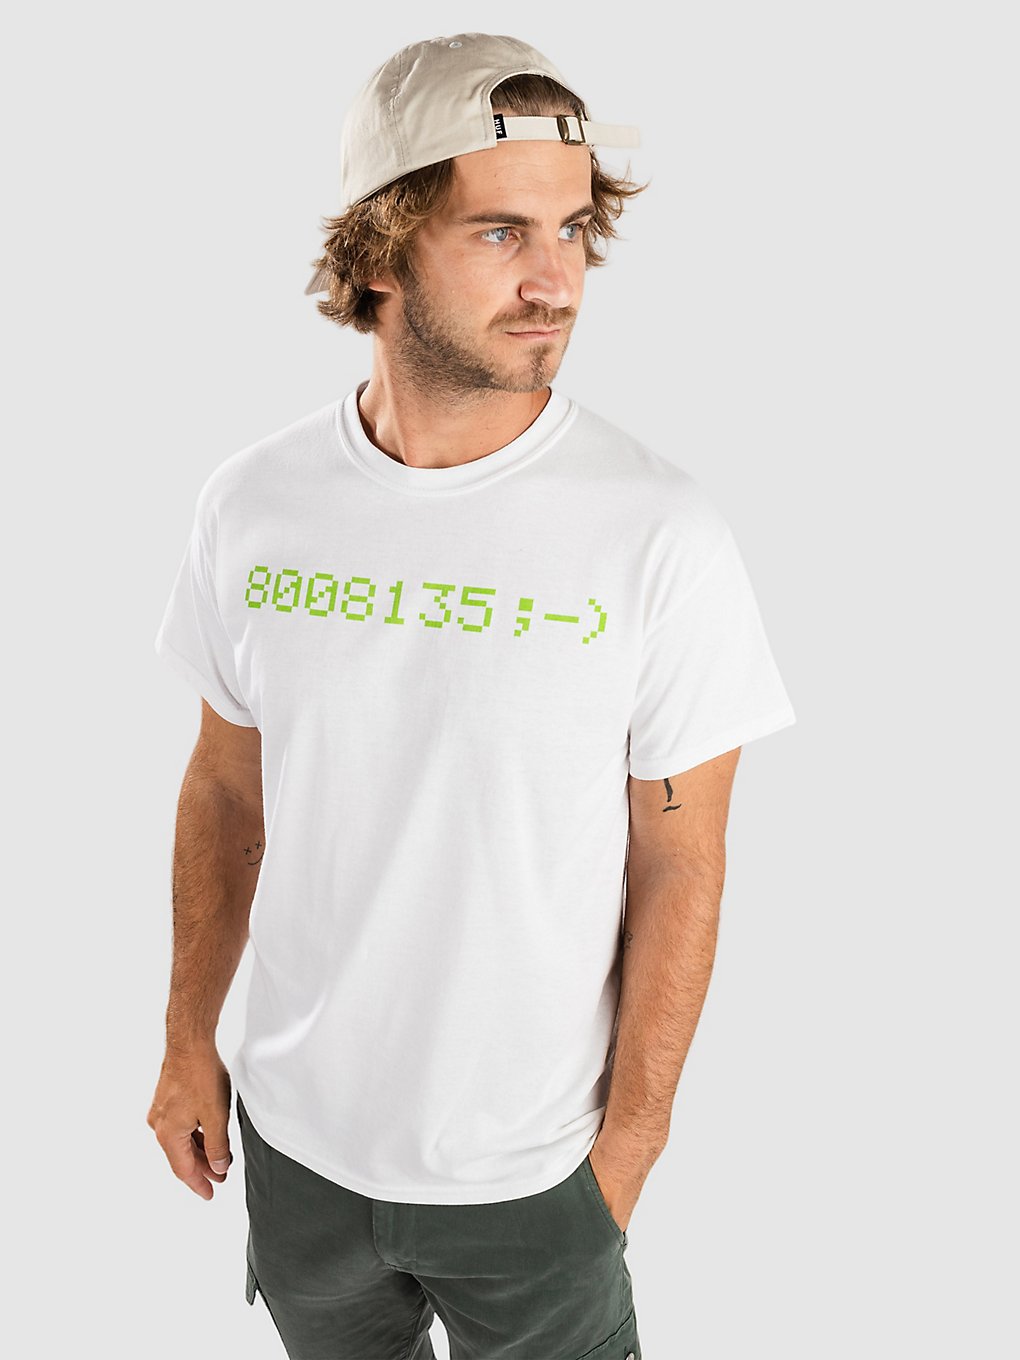 A.Lab 8008135 T-Shirt white kaufen